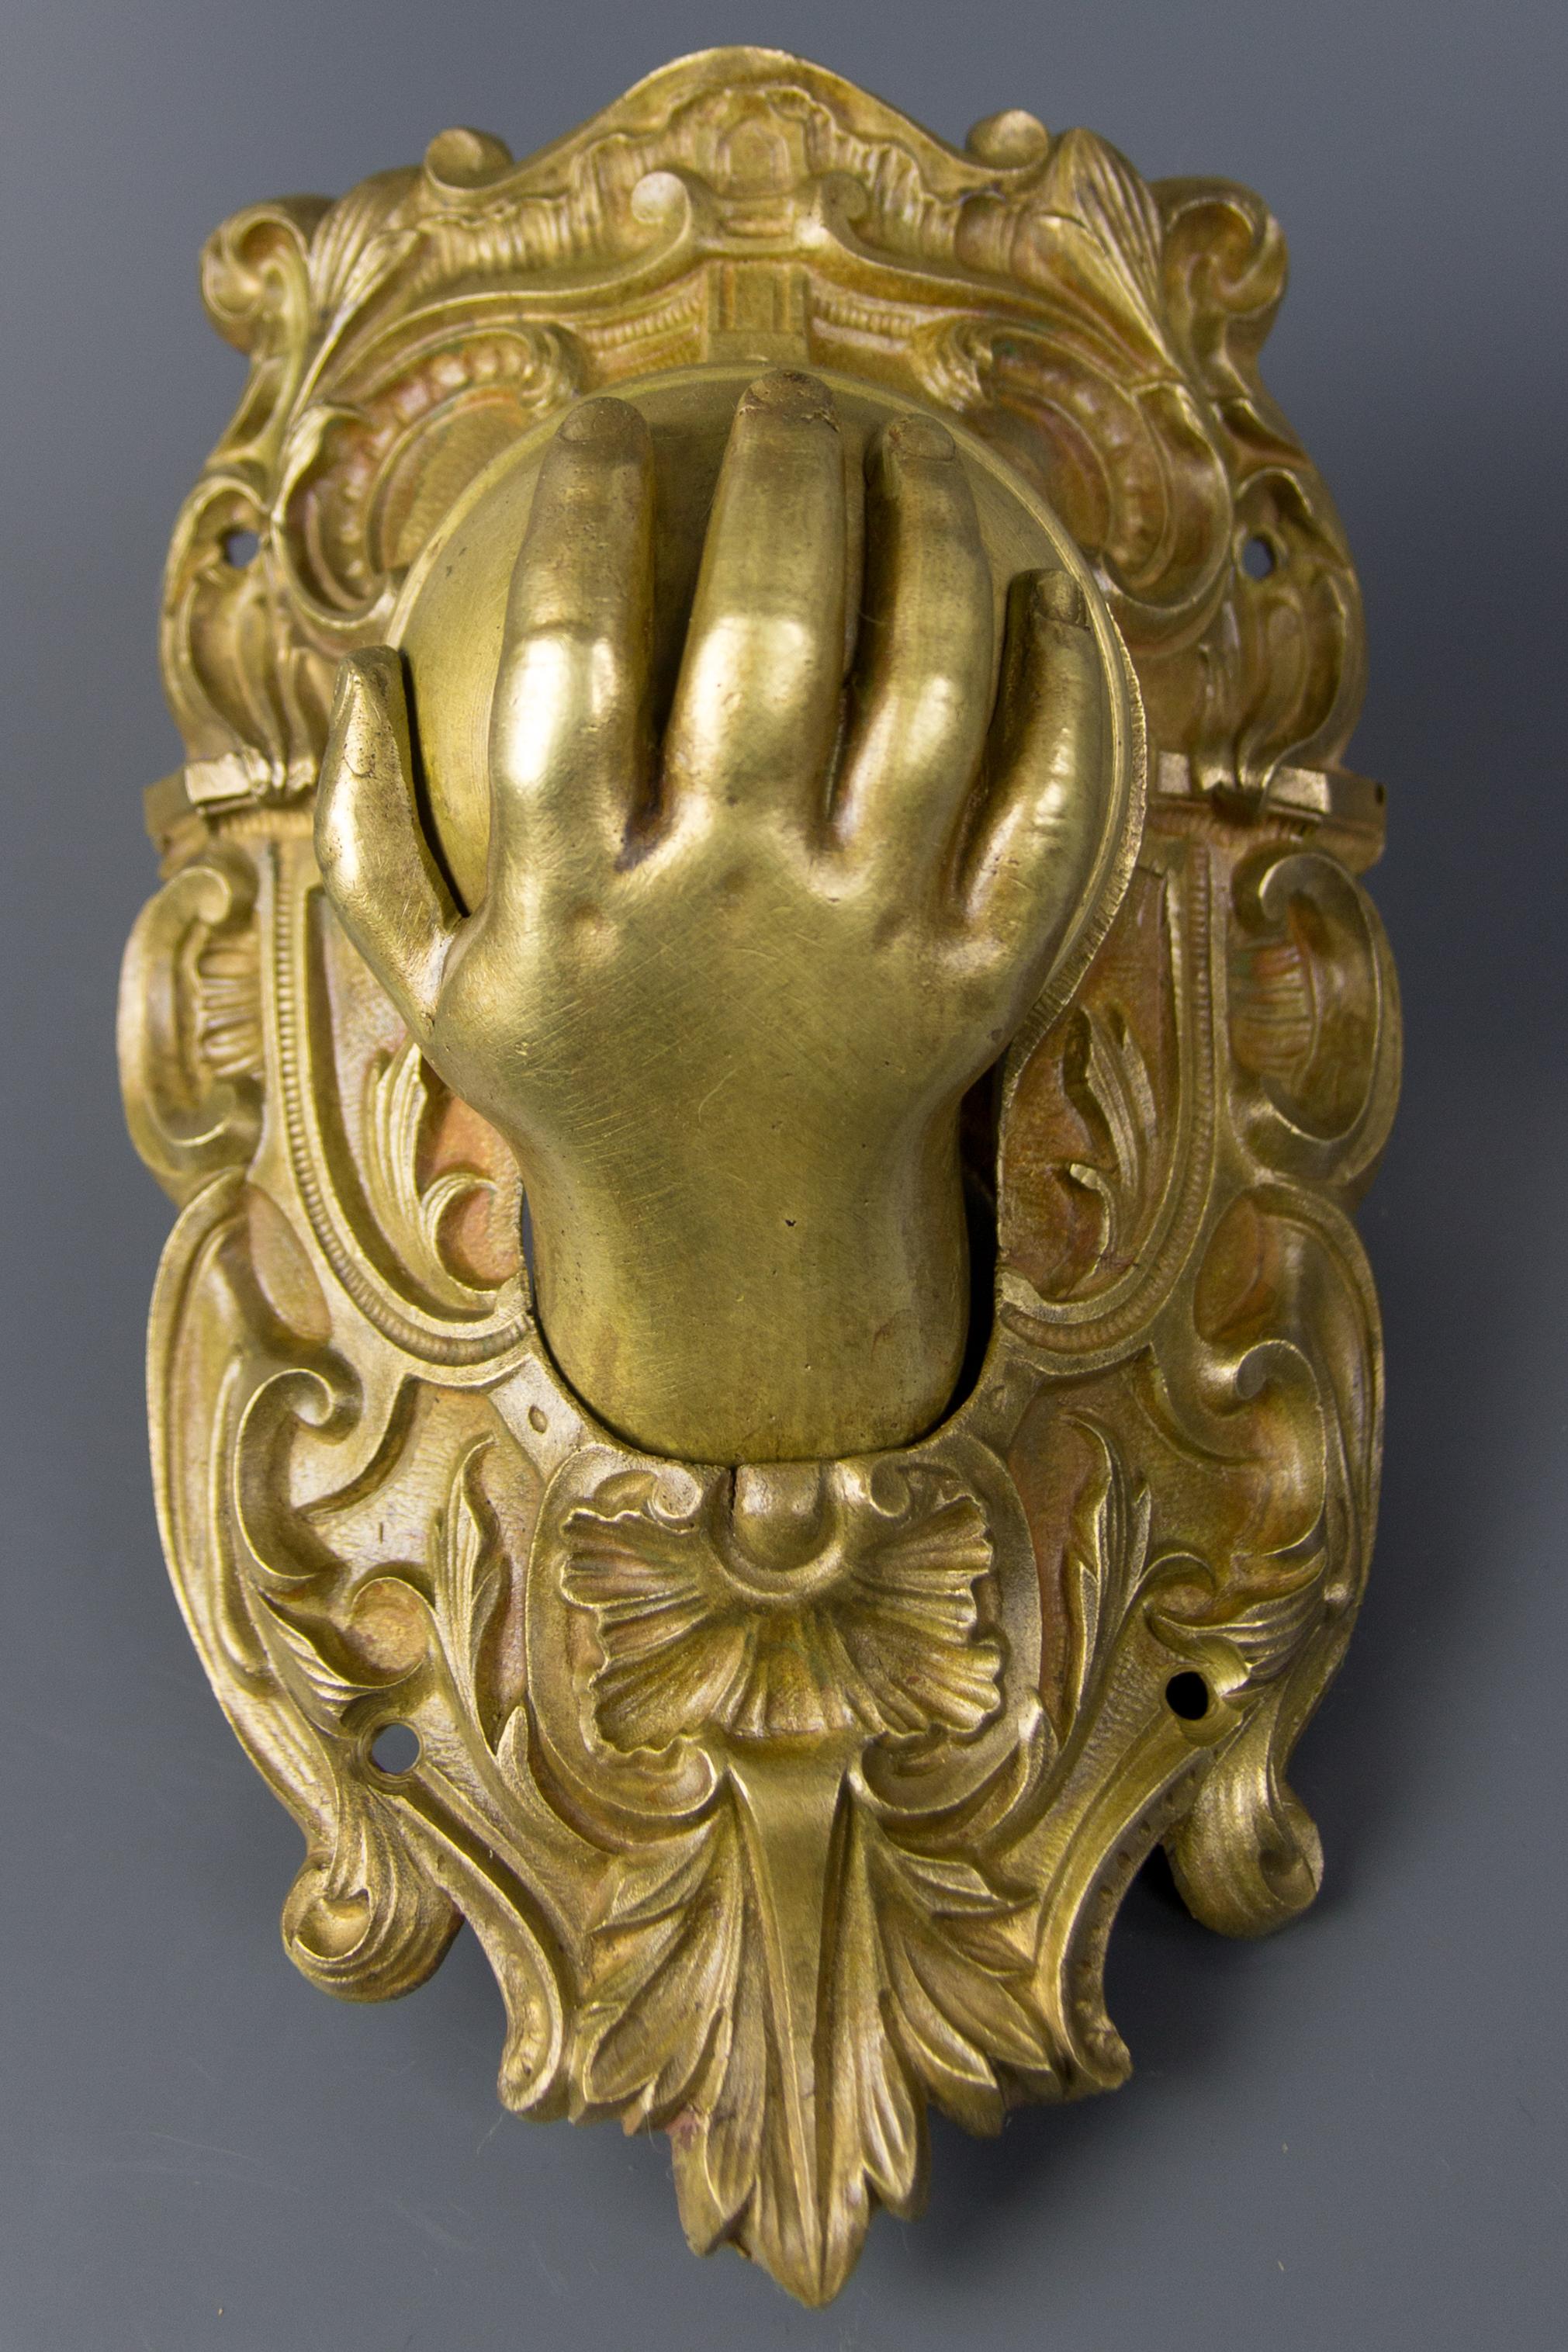 Antique bronze français orné d'un attrape-balles de coin de billard avec une main de bébé de la fin du 19ème siècle. Il faisait à l'origine partie de la décoration ornementale d'une grande table de billard et aurait été placé sur l'une des poches